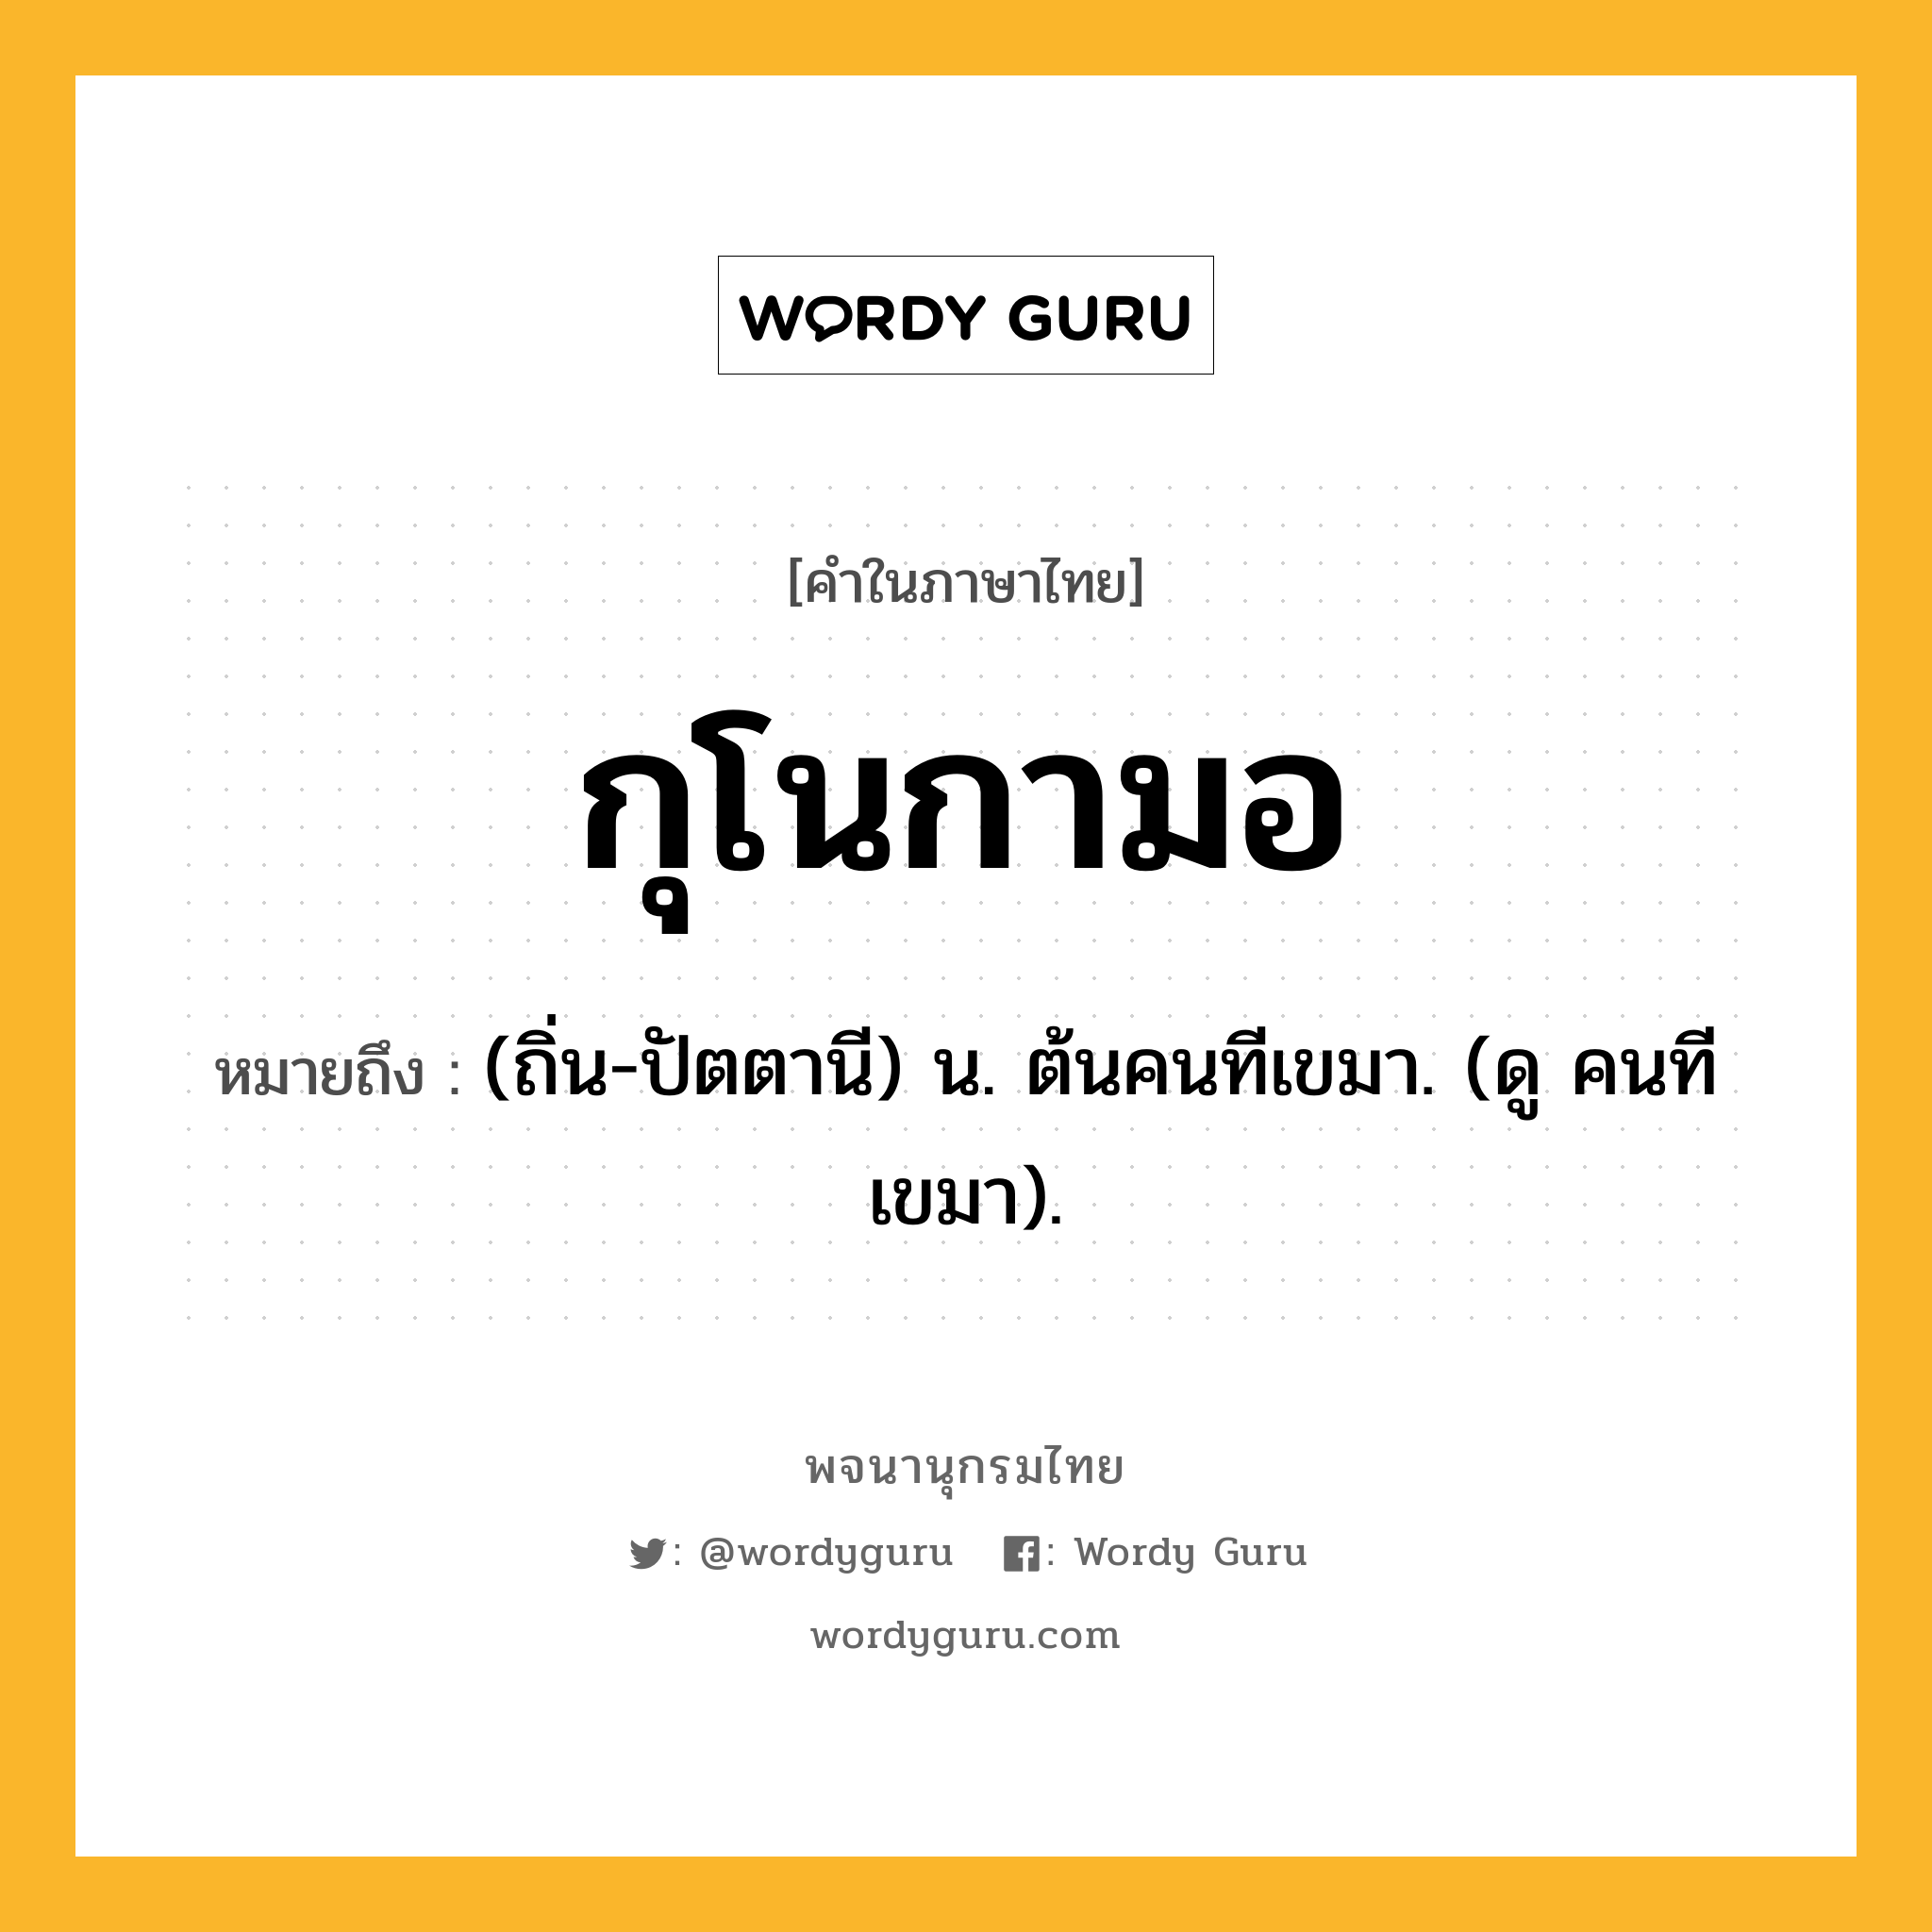 กุโนกามอ ความหมาย หมายถึงอะไร?, คำในภาษาไทย กุโนกามอ หมายถึง (ถิ่น-ปัตตานี) น. ต้นคนทีเขมา. (ดู คนทีเขมา).